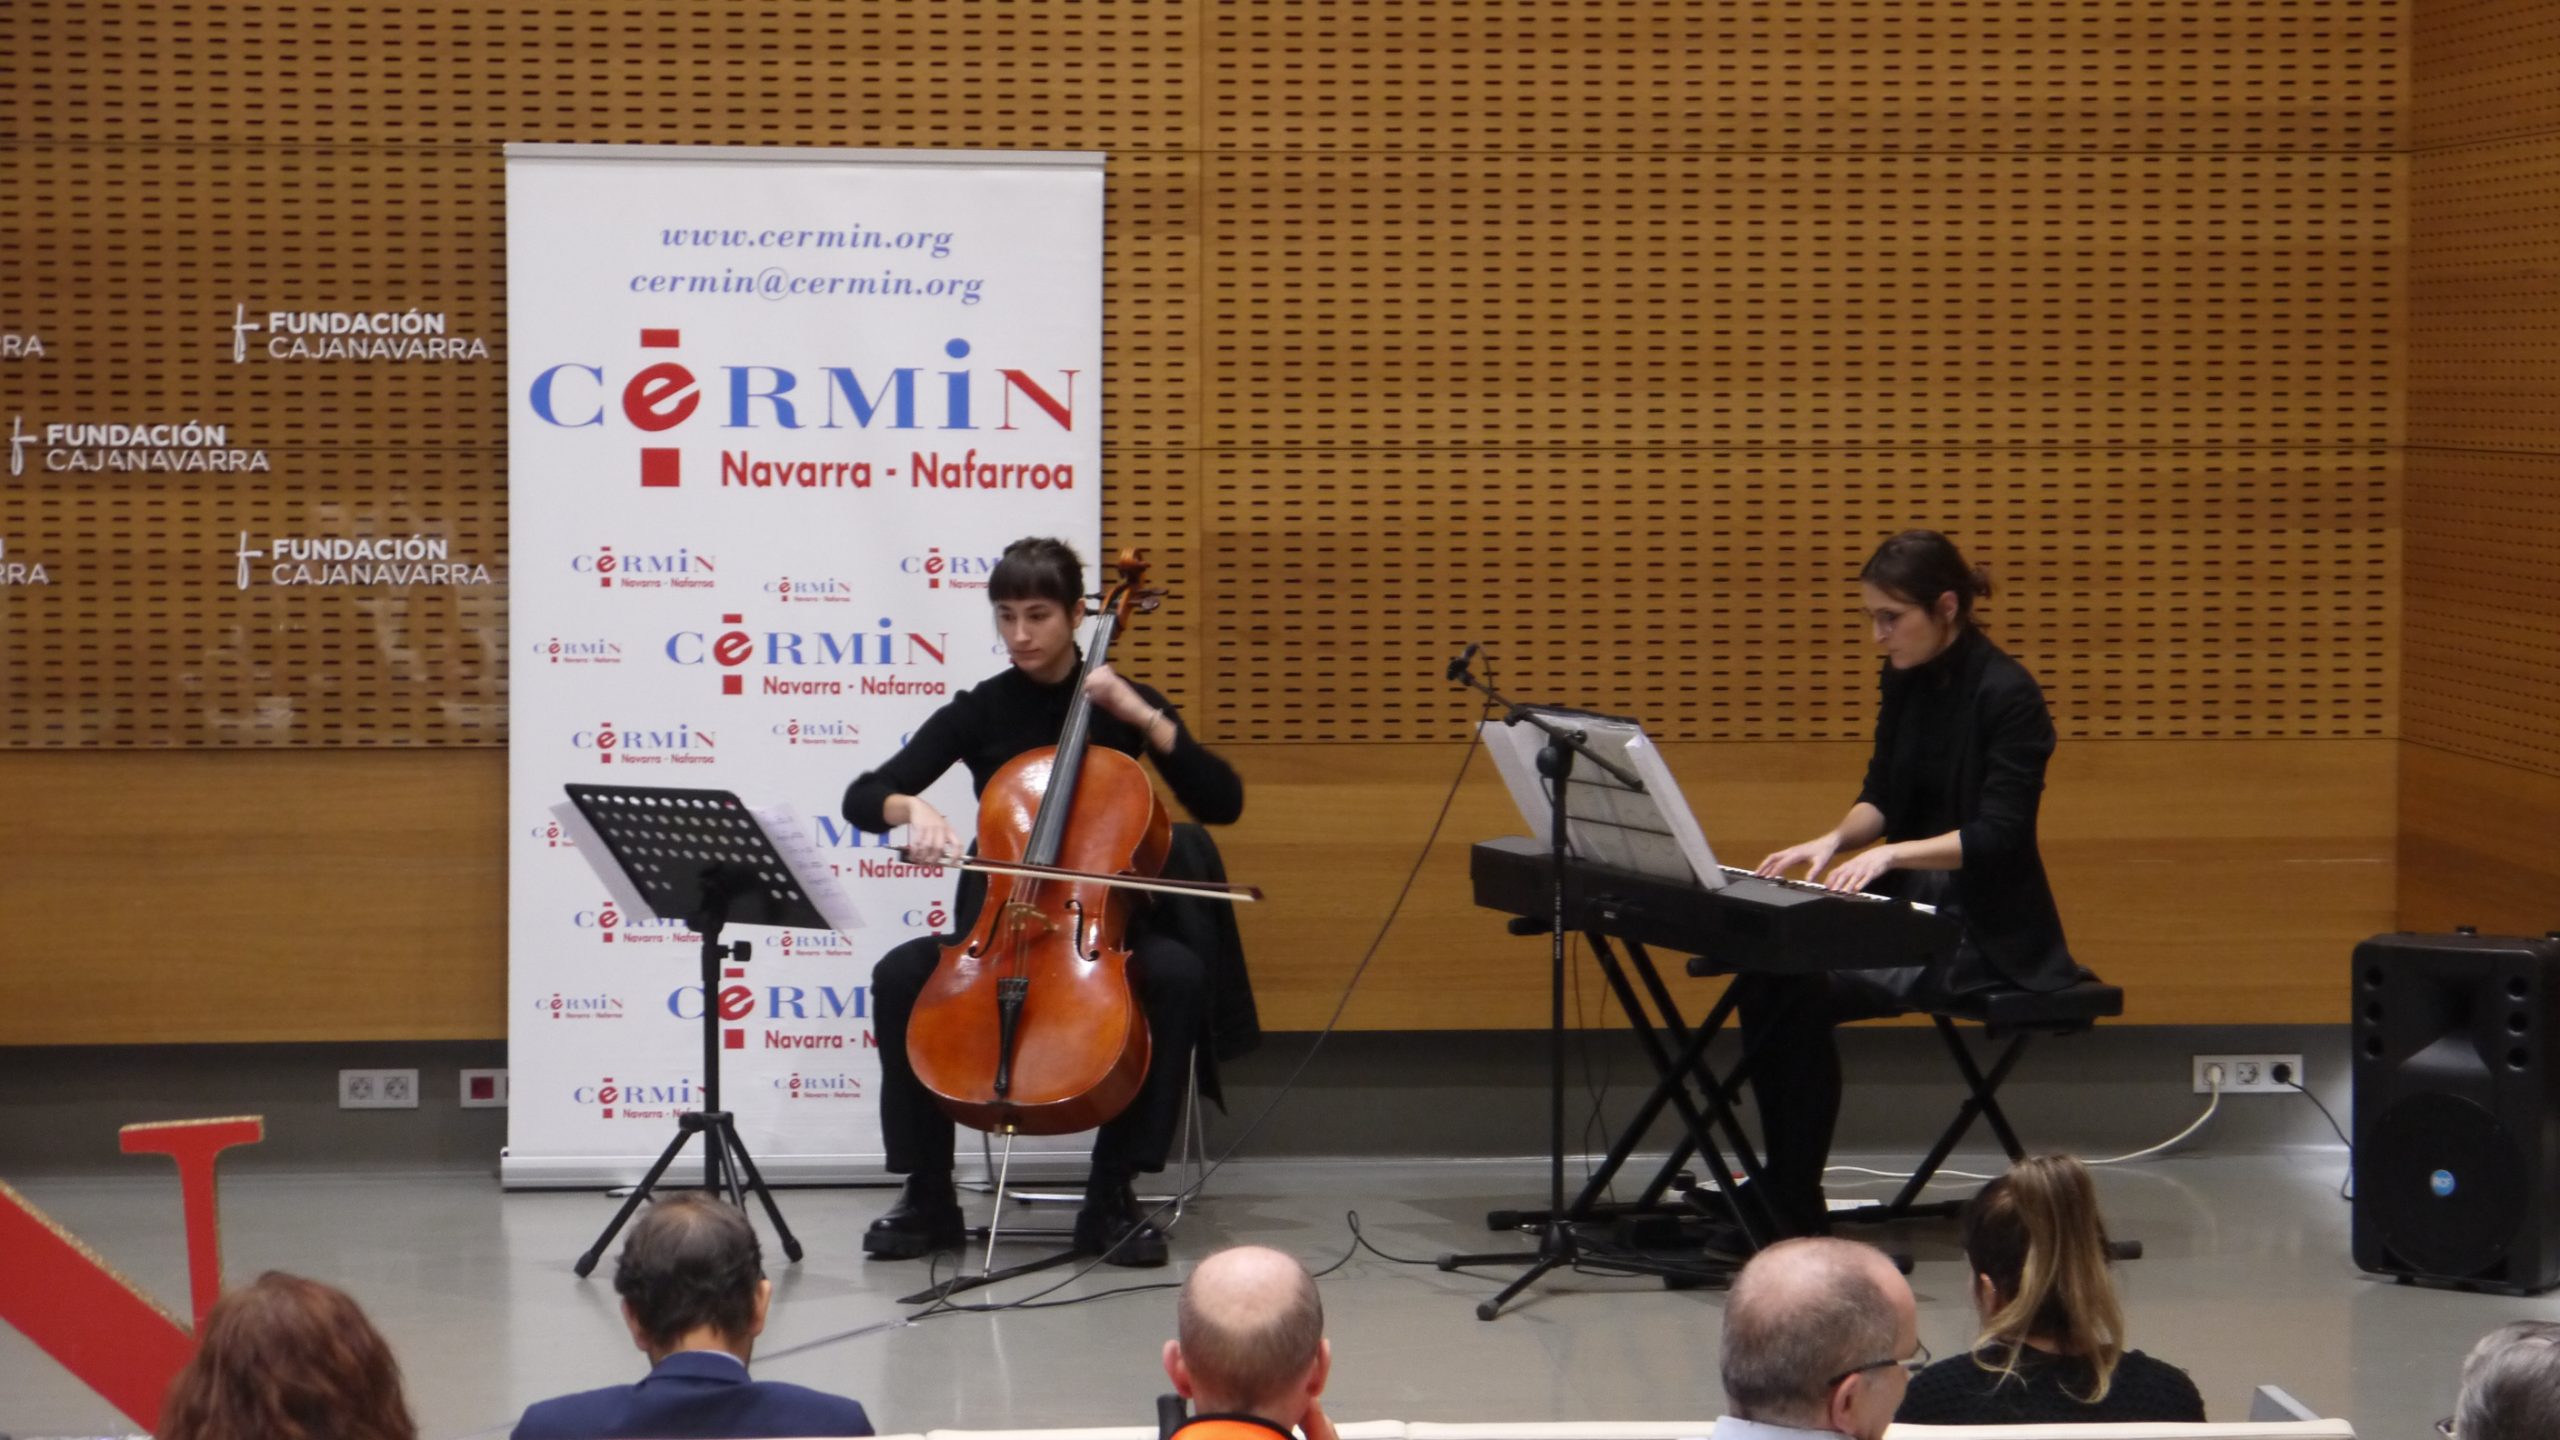 Dos mujeres tocando, respectivamente, un violoncello y un piano. Detrás de ellas está el logo de CERMIN.